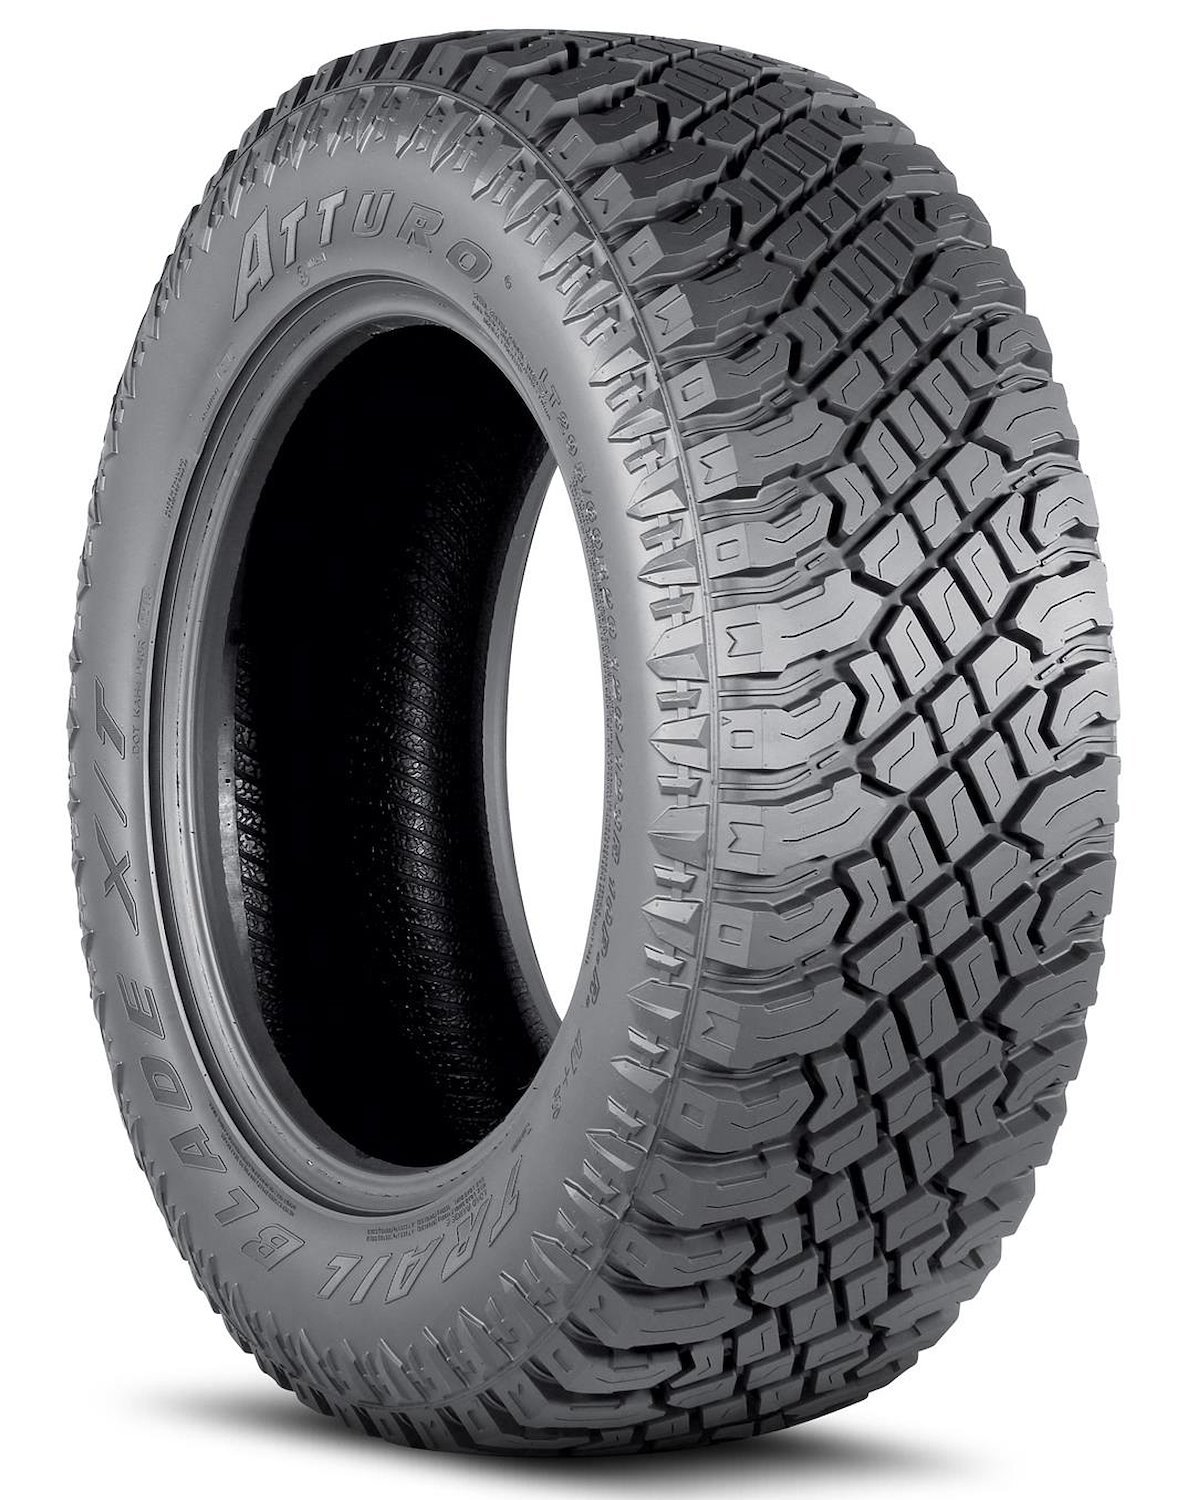 TBXT-FLJR3LA Trail Blade X/T Tire, LT275/65R20